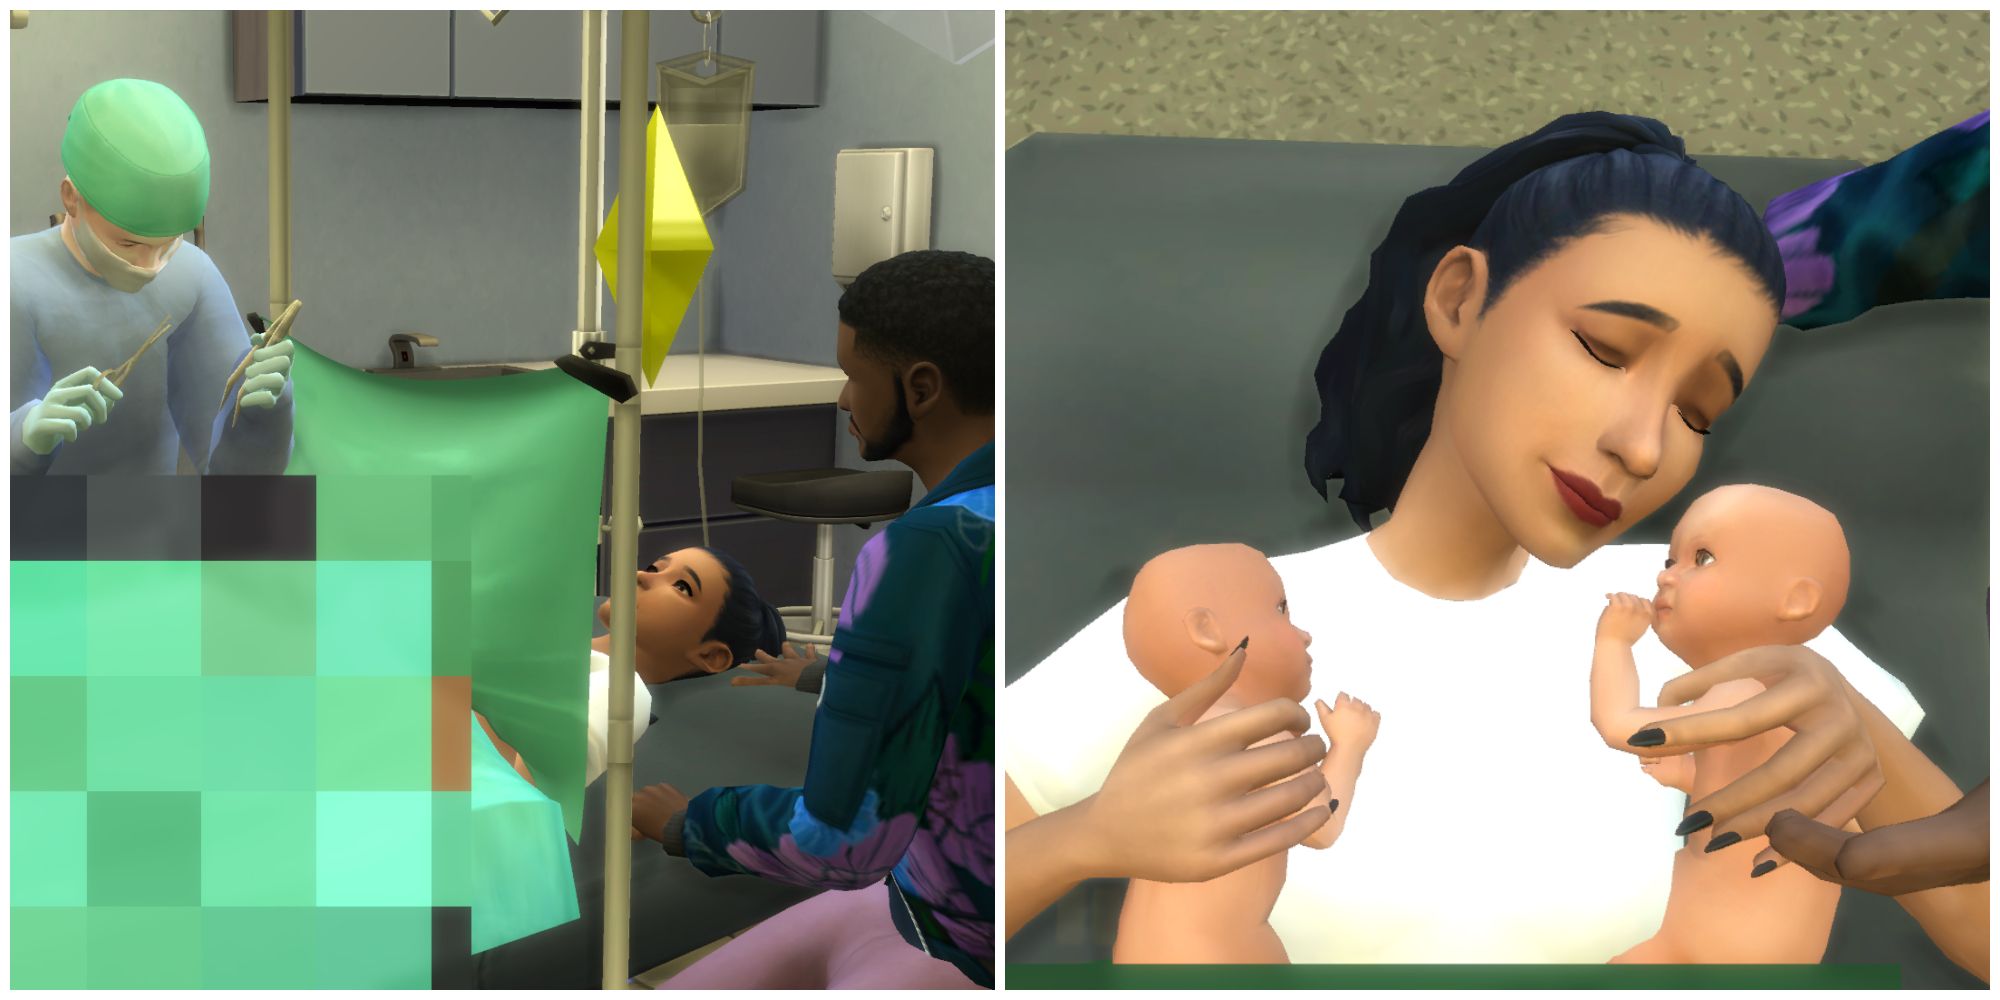 Childbirth Mod de Pandasama mejora el sistema de parto hospitalario al ampliar las opciones para cirugías de cesárea y parto natural.